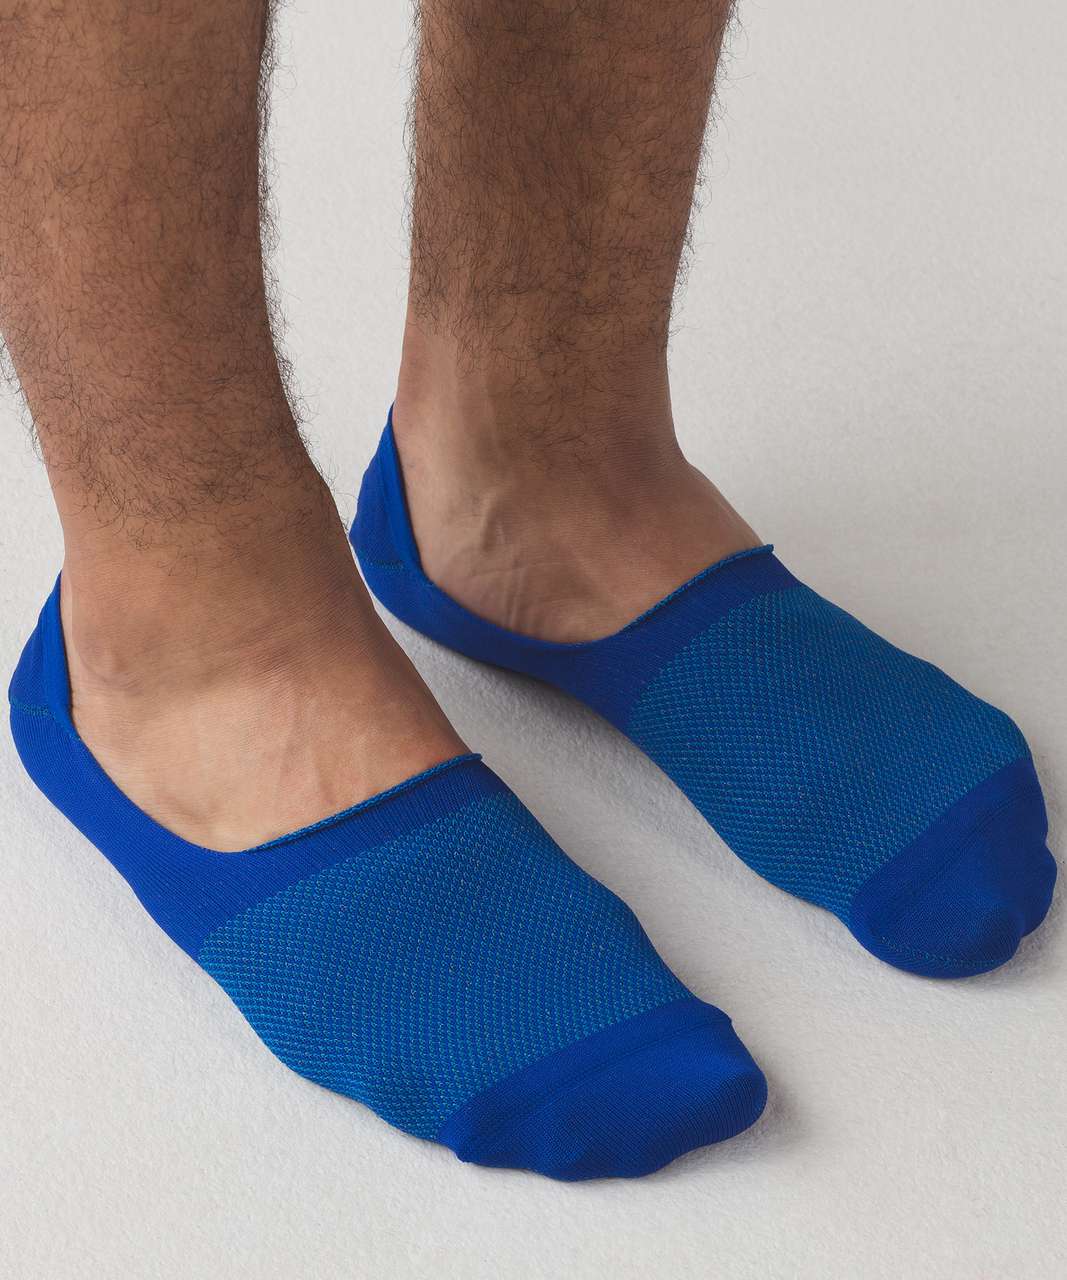 Lululemon No Sock Sock Silver - Hyper Blue / Shocking Blue / Black